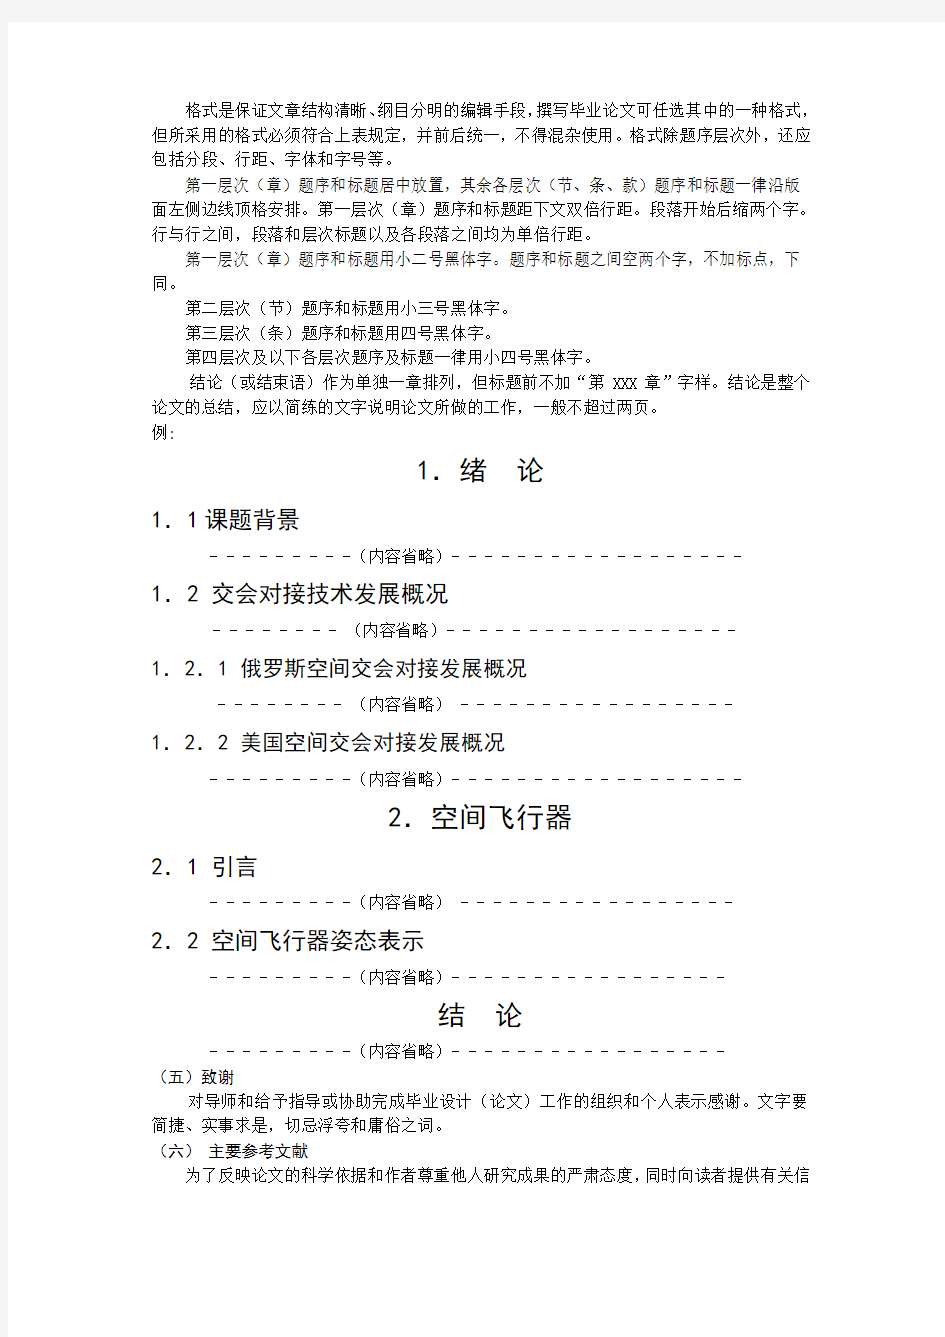 北京工业大学本科生毕业设计(论文)撰写规范